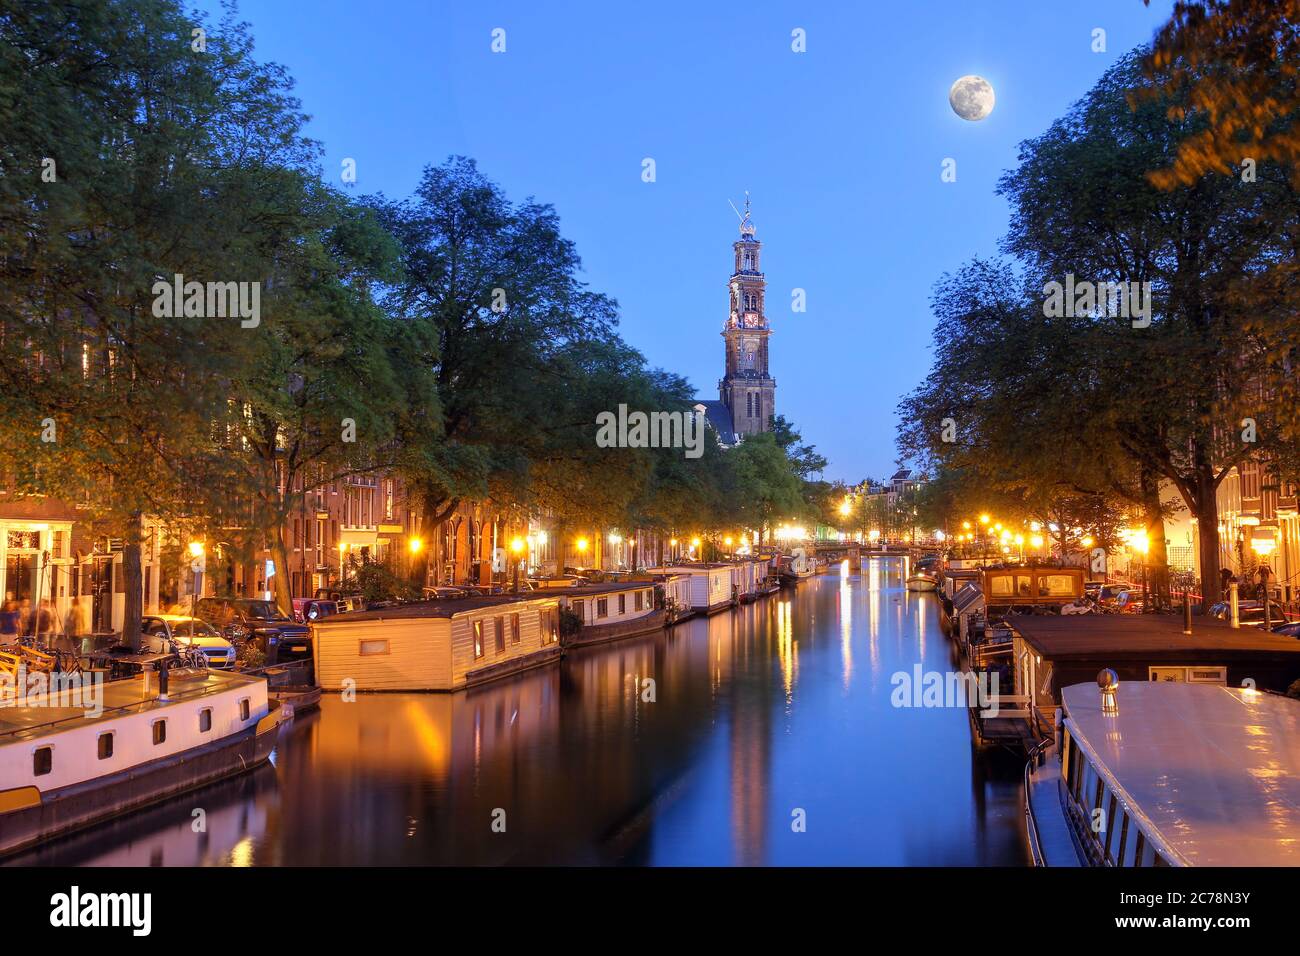 Scena notturna del canale Prinsengracht ad Amsterdam (Paesi Bassi) con la guglia di Westerkerk e la luna piena. La luna originale sovraesposta era replica Foto Stock